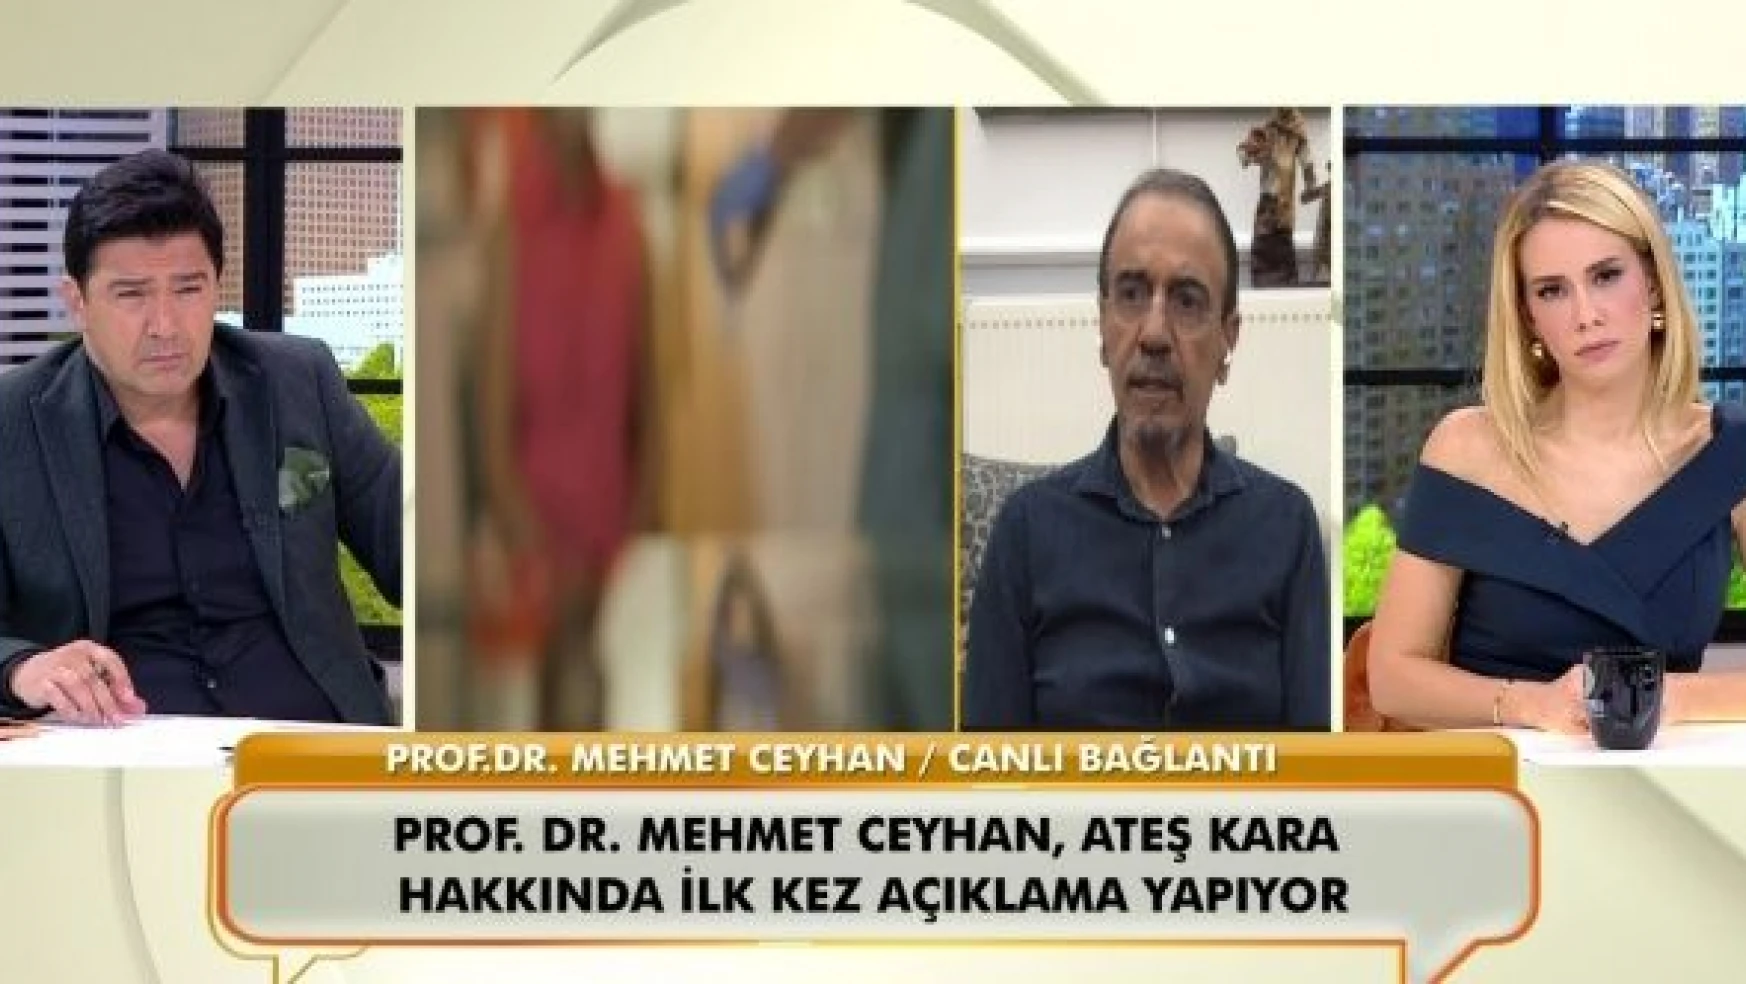 Prof. Dr. Mehmet Ceyhan:" Turkovac etkilidir diyebilmem için veri lazım ama açıklanmadı"